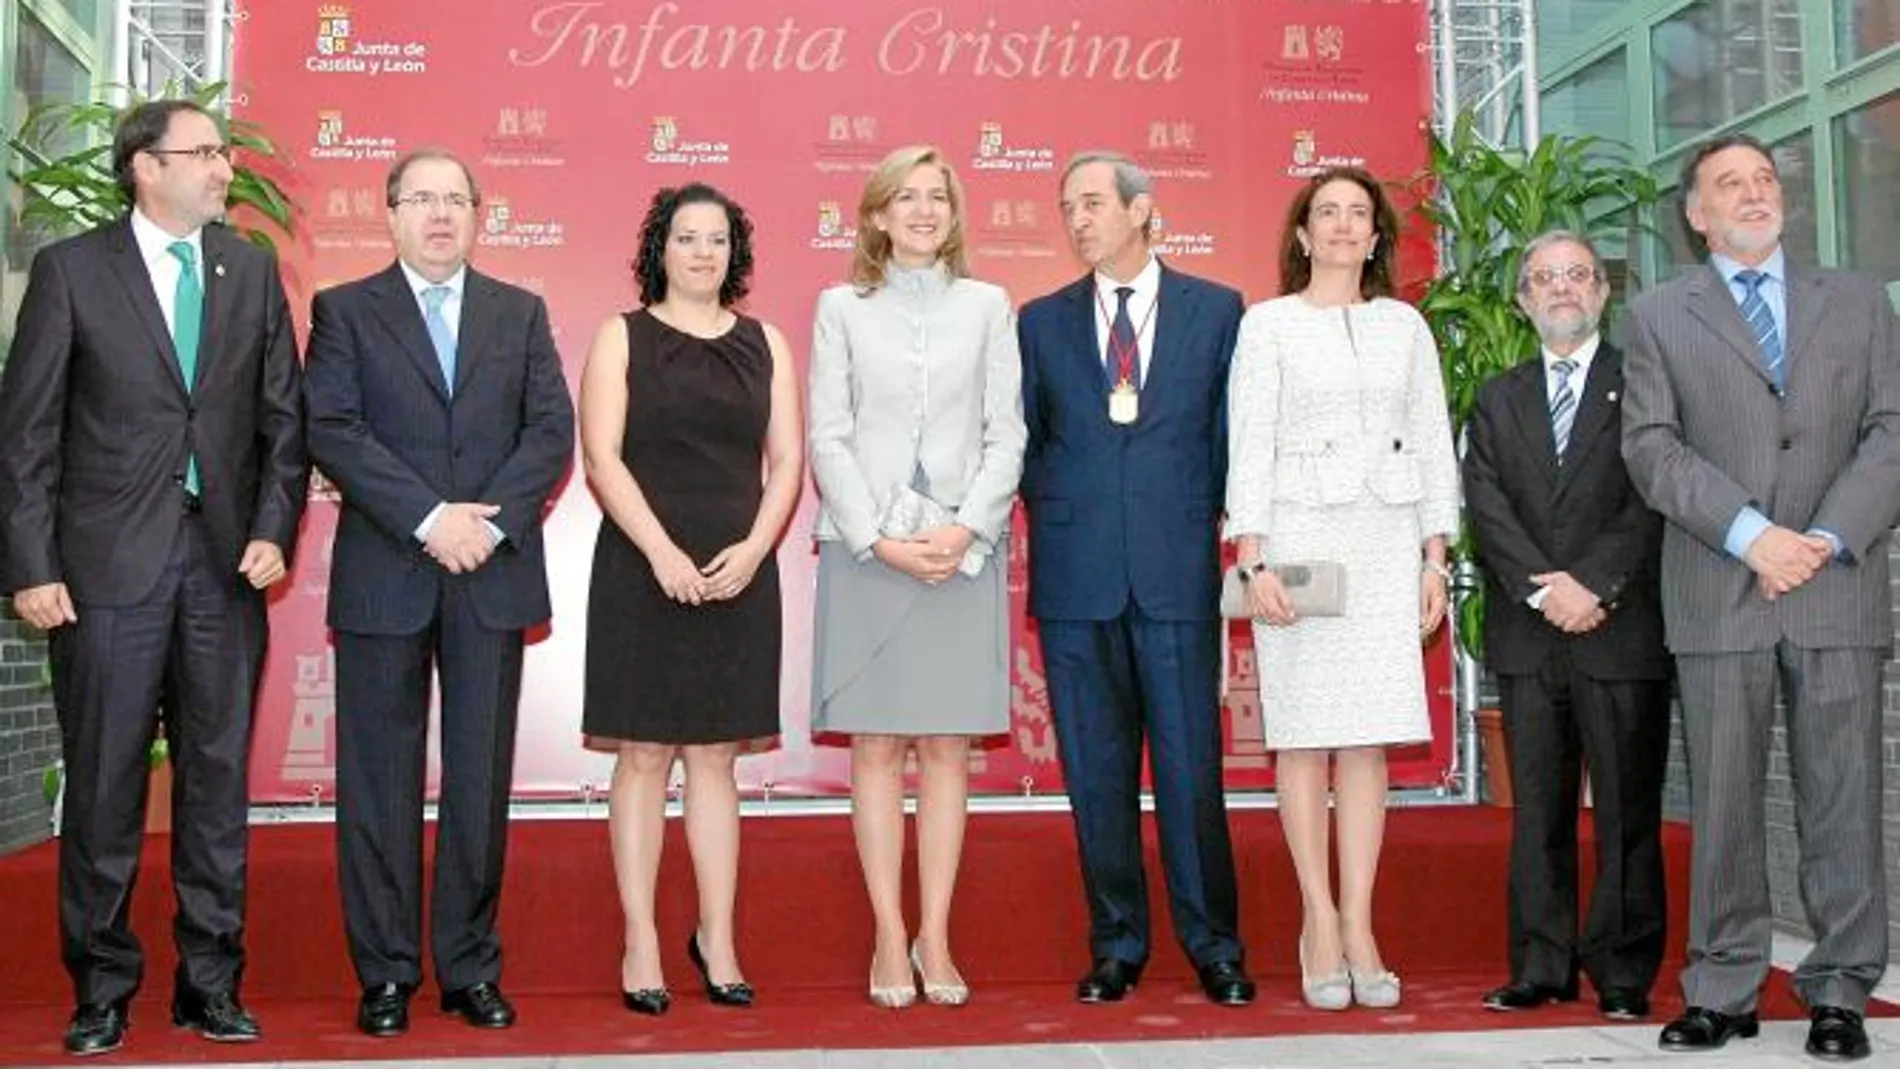 Polanco, Herrera, Elena Berzal, Doña Cristina, Claudio Boada, Josefa García, Marcos Sacristán y Alejopara el Gobierno Herrera